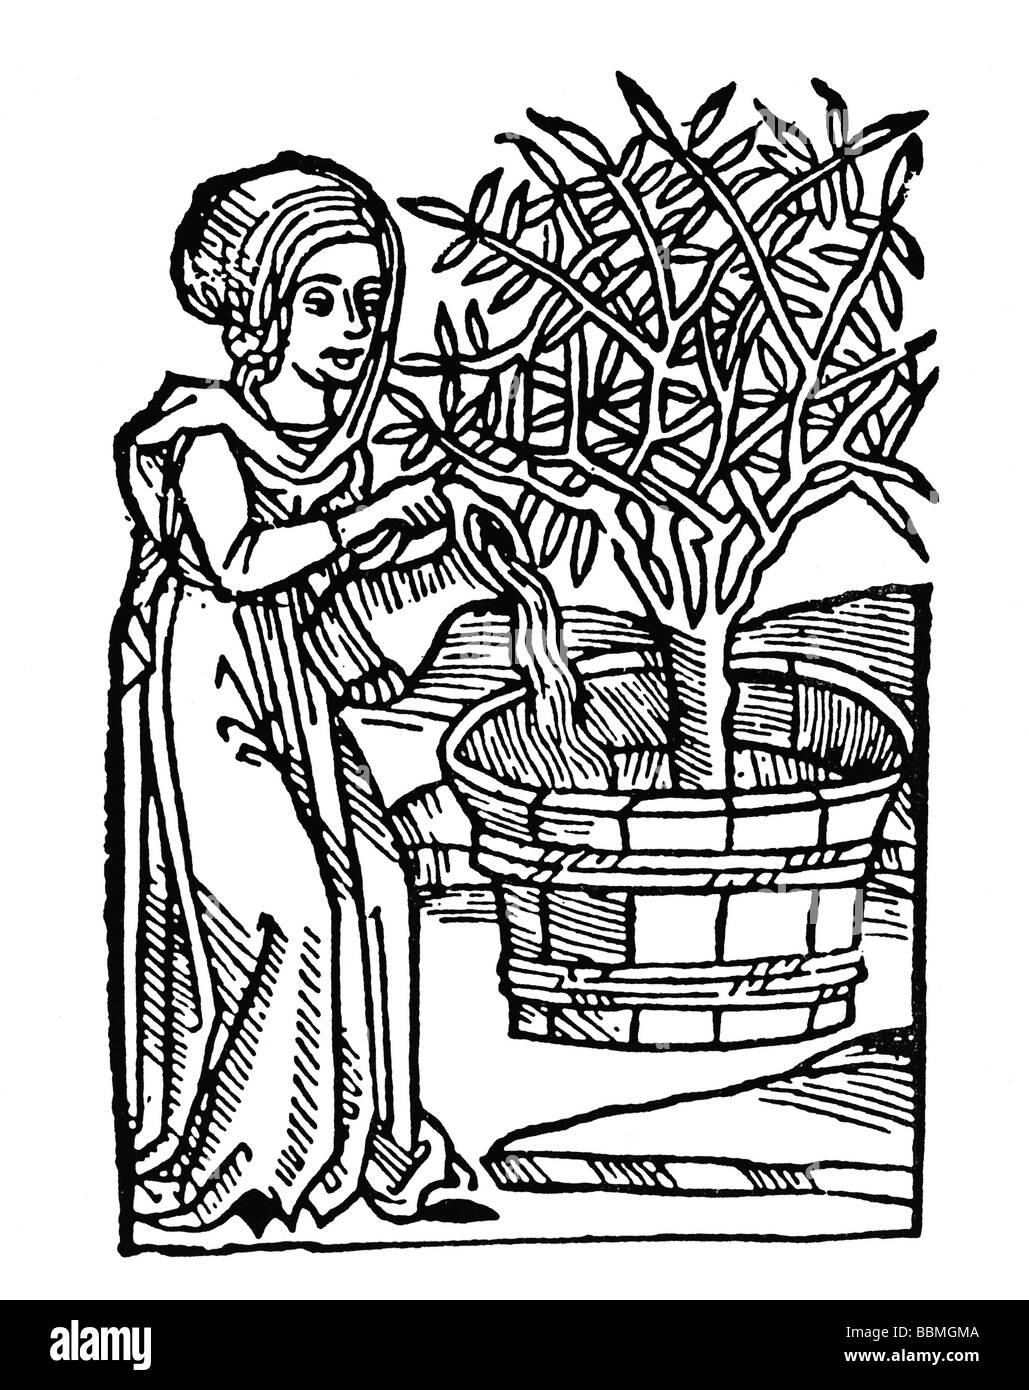 El árbol de Violetta. - Página 6 Mujer-regar-un-arbol-en-un-cubo-de-madera-tallado-en-madera-de-la-epoca-medieval-bbmgma